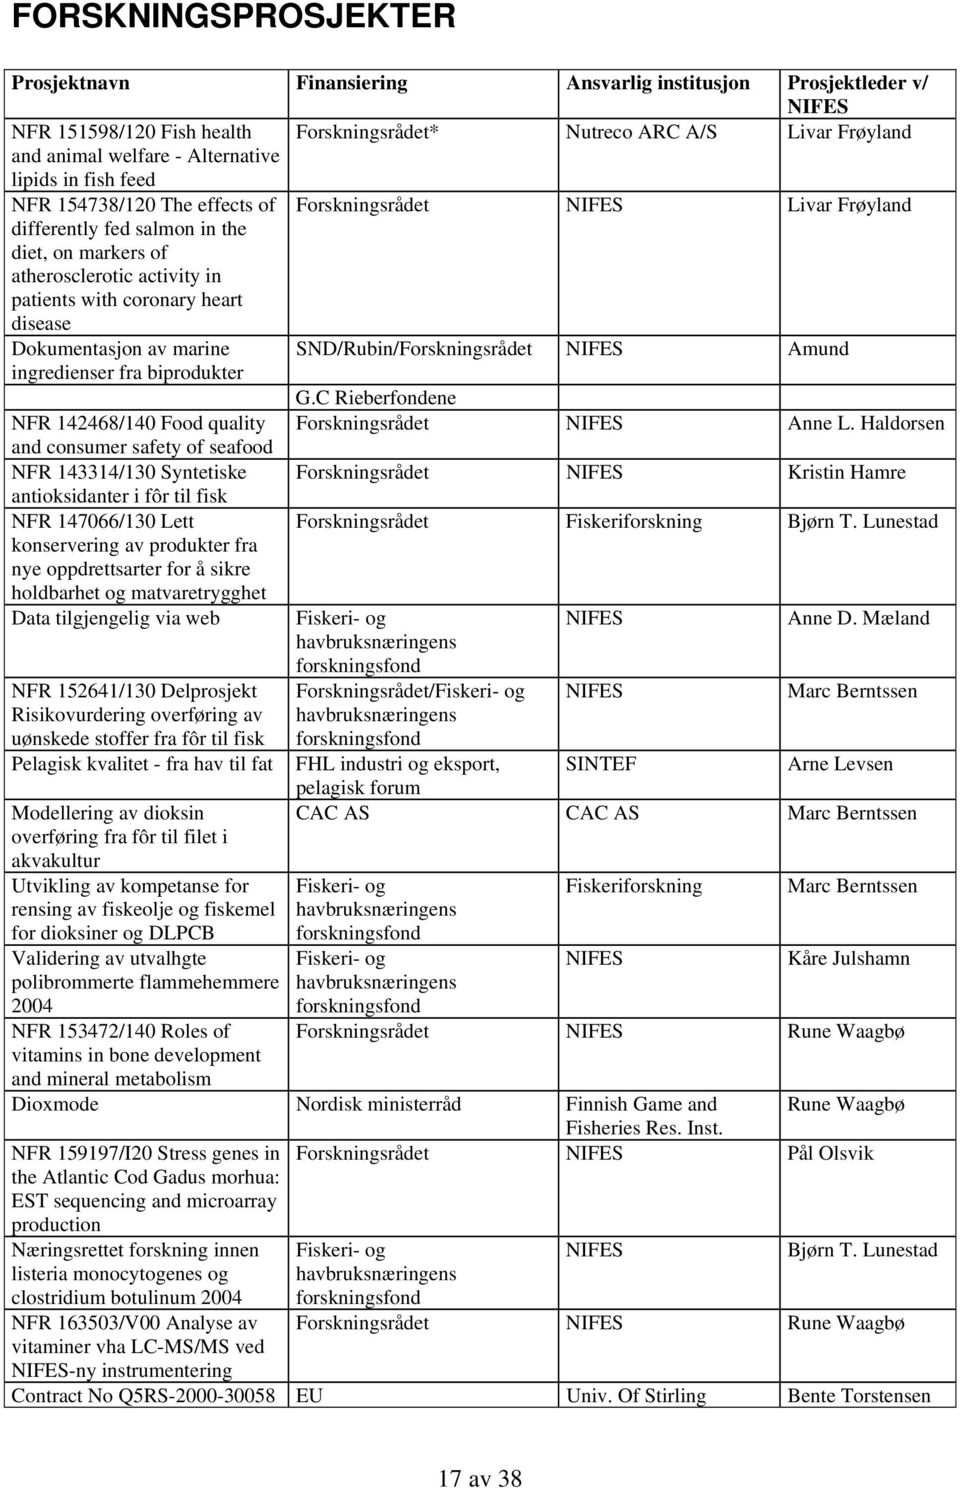 disease Dokumentasjon av marine SND/Rubin/Forskningsrådet NIFES Amund ingredienser fra biprodukter G.C Rieberfondene NFR 142468/140 Food quality Forskningsrådet NIFES Anne L.